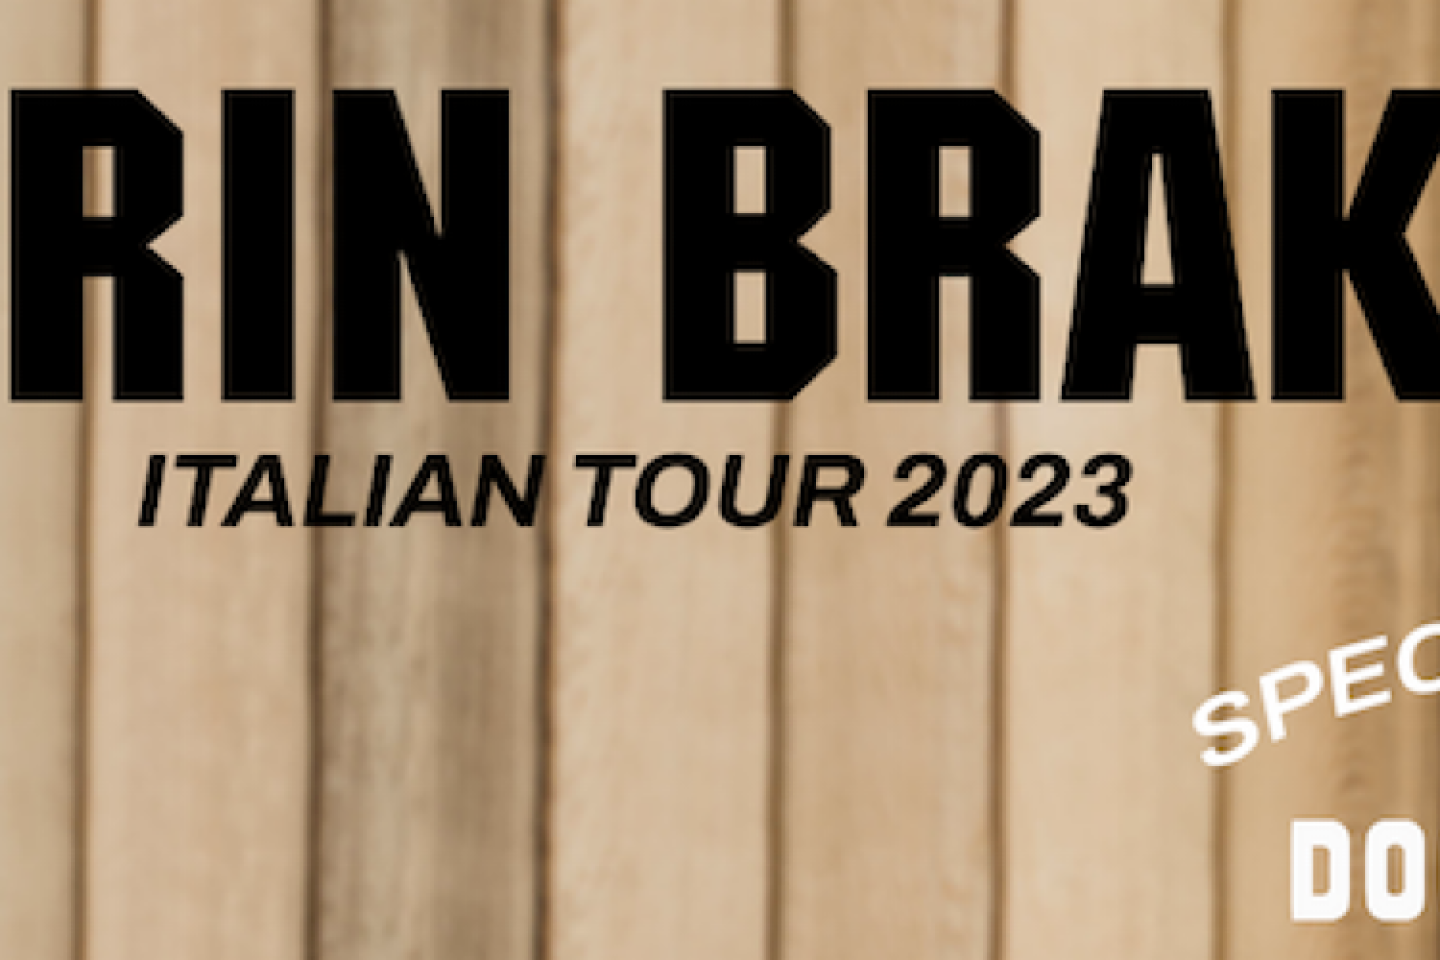 TURIN BRAKES_ la band alternative rock londinese arriva in Italia ad aprile per l’Italian Tour 2023, con Dog Byron